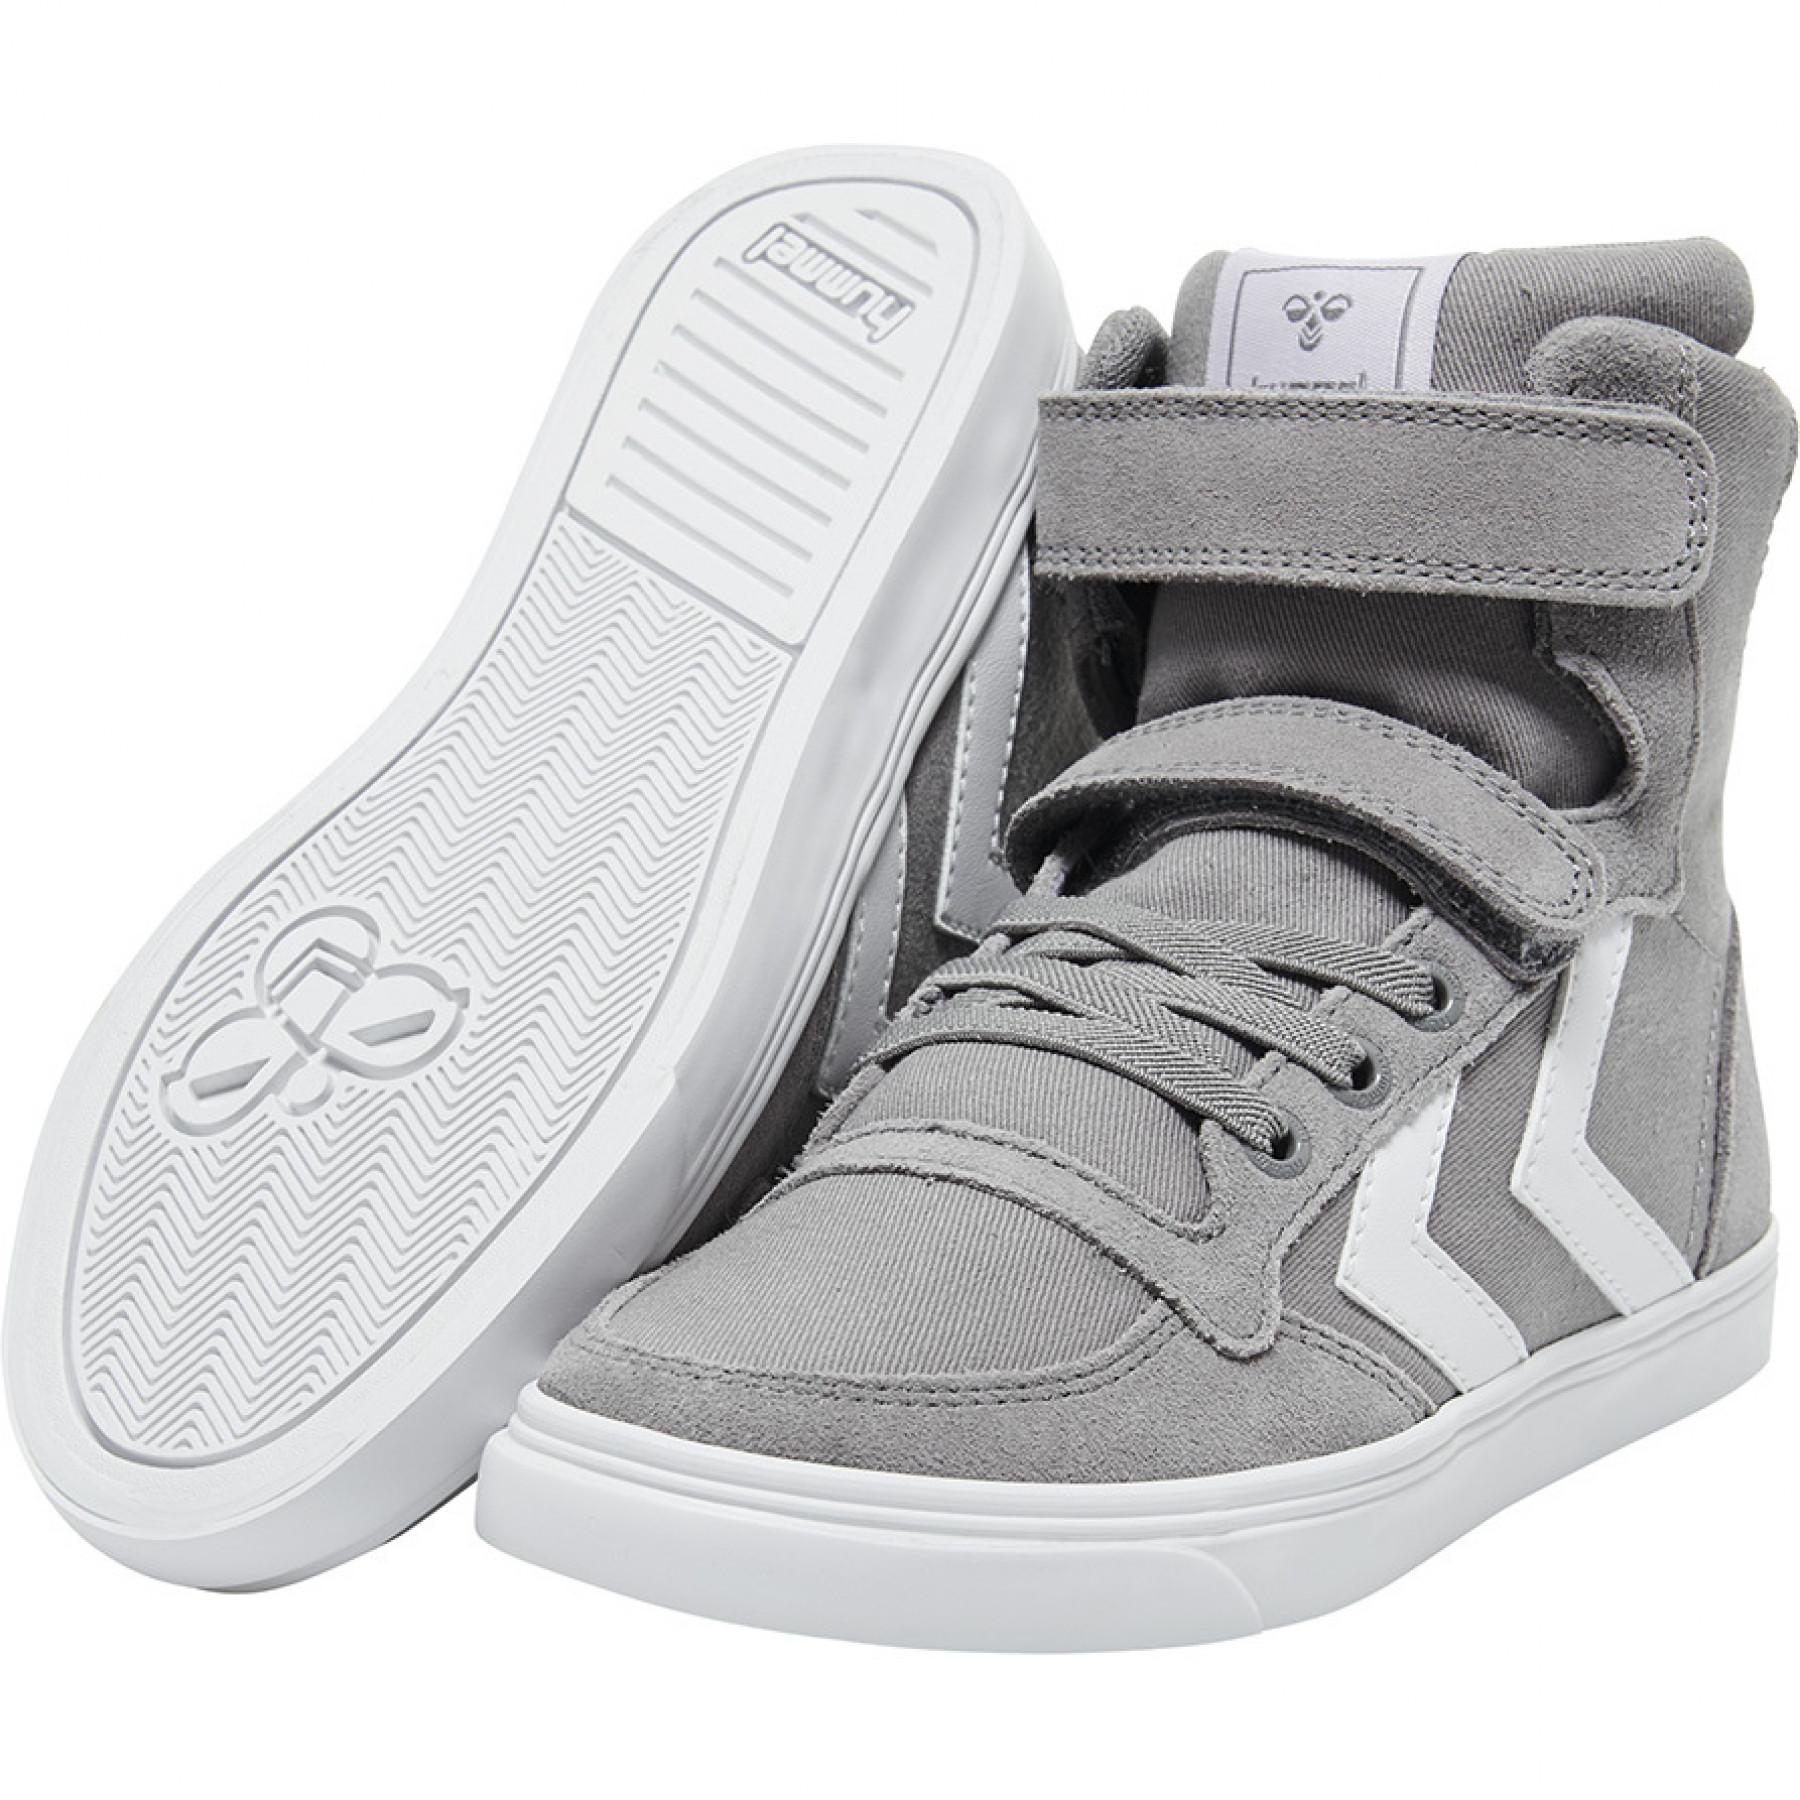 sneakers Hummel Slimmer Stadil High - Hummel Junior Sneakers - Lifestyle